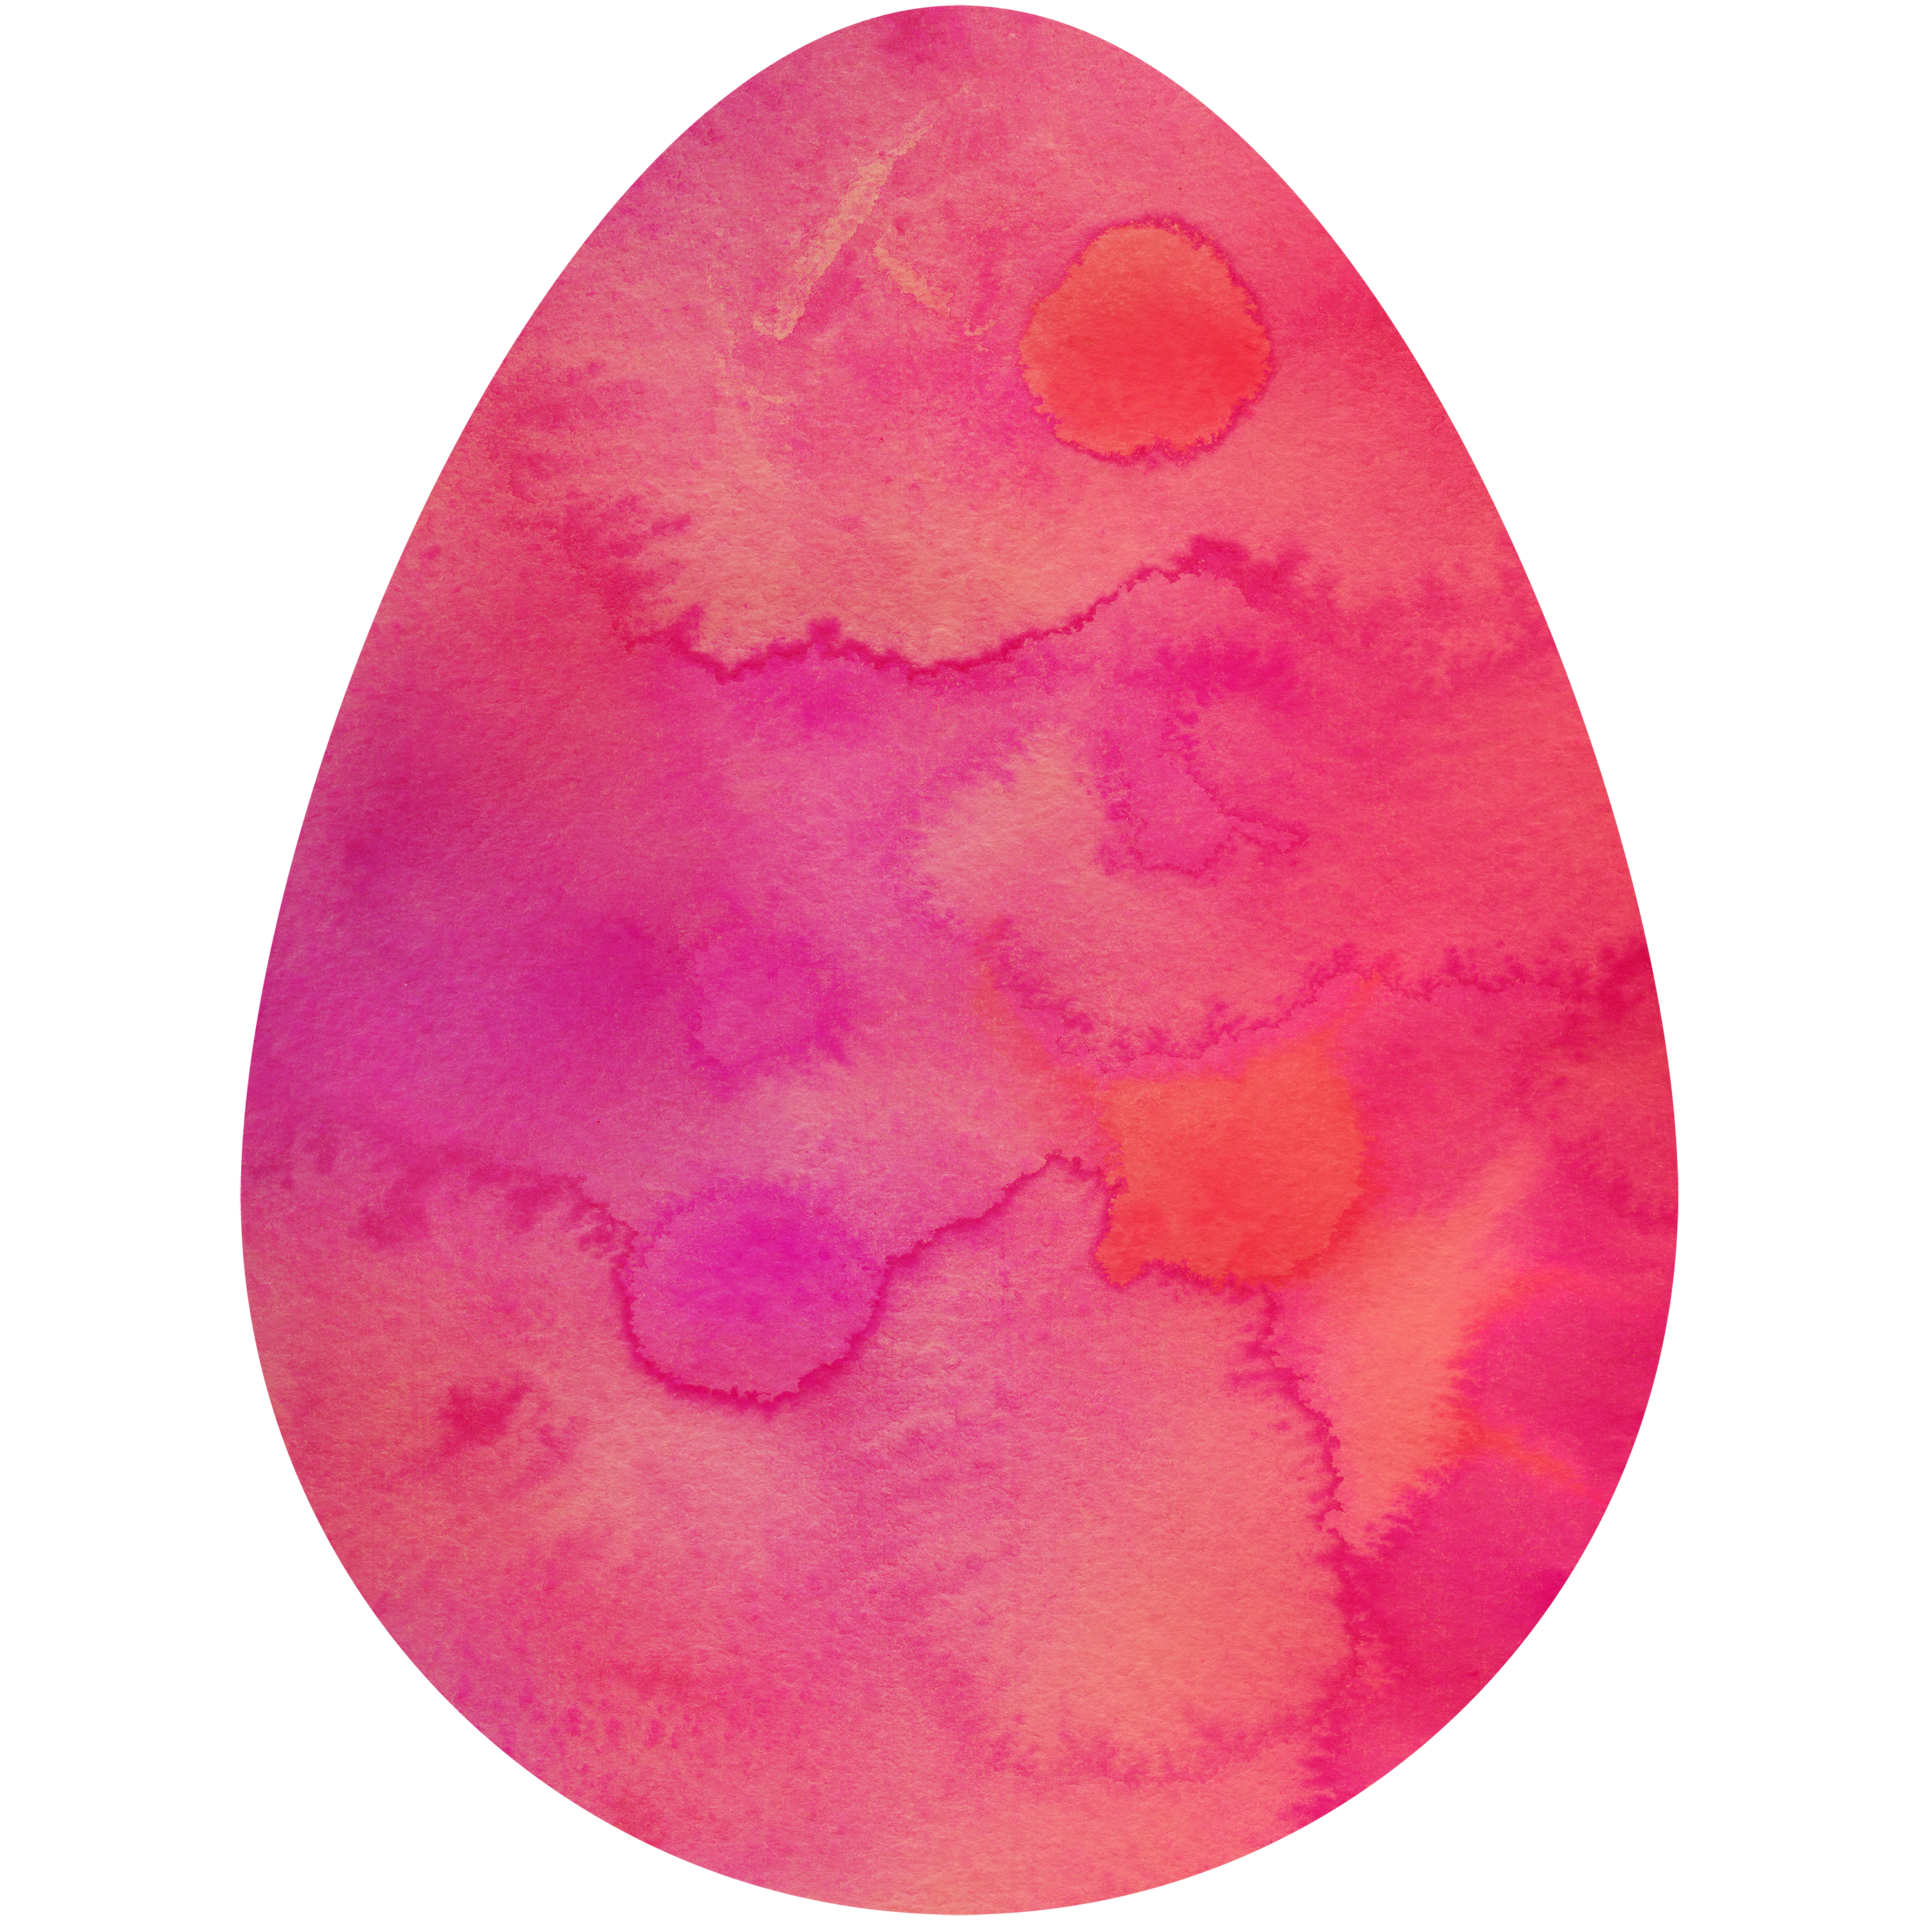 Trứng Phục Sinh màu sắc vẽ bằng màu nước tươi sáng, tạo nét đẹp tự nhiên và nhẹ nhàng. Bạn sẽ không thể bỏ lỡ bức hình đầy màu sắc và tràn đầy sức sống này.